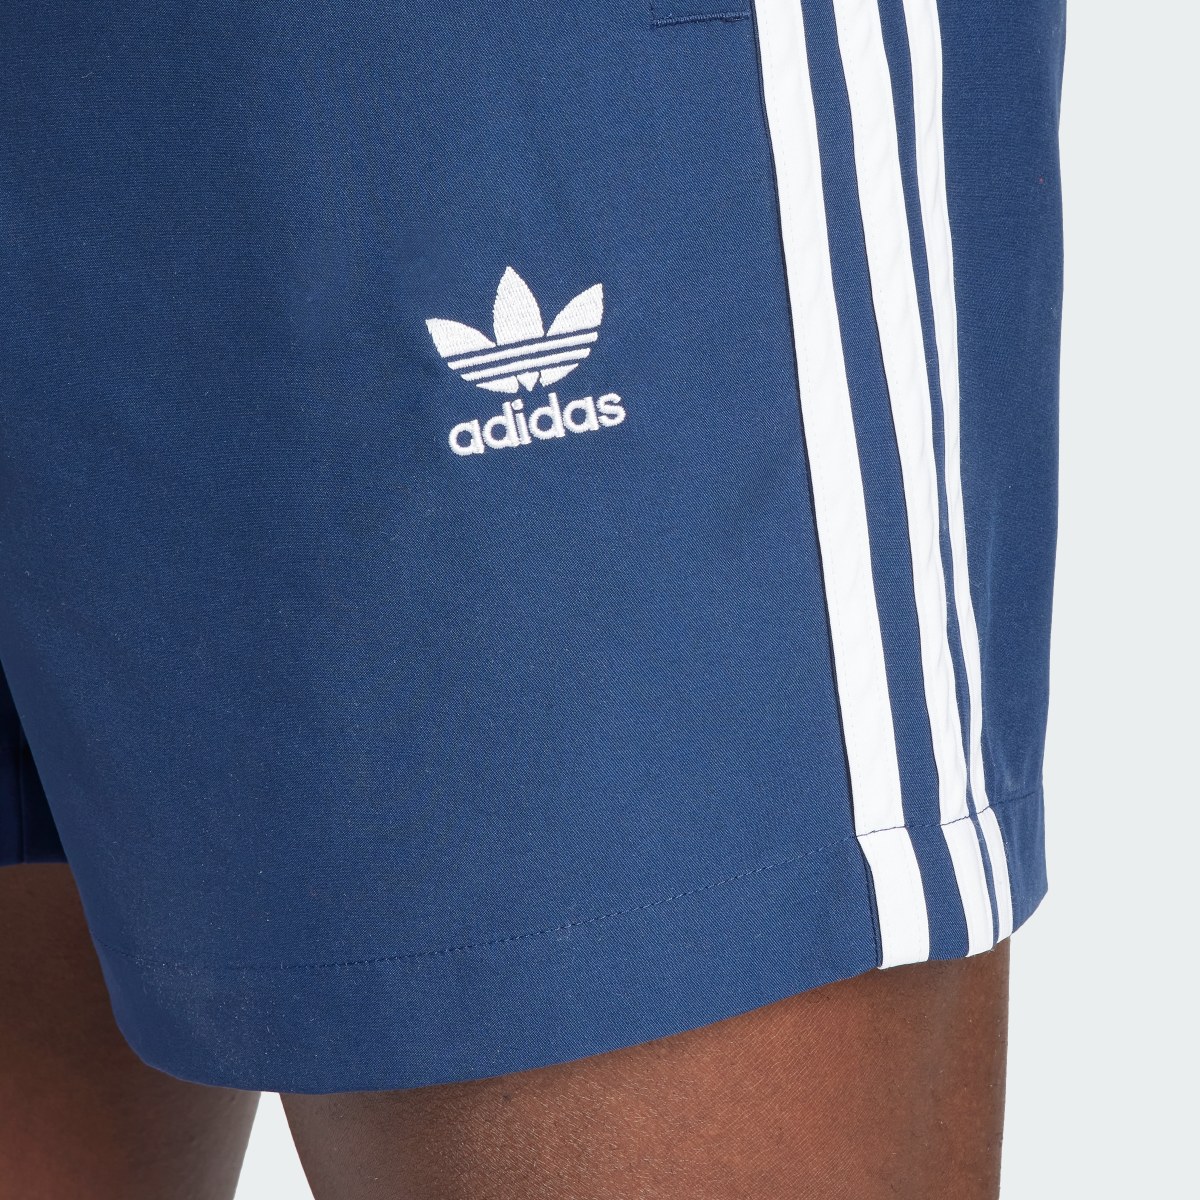 Adidas Originals Adicolor 3-Stripes Swim Shorts. 5